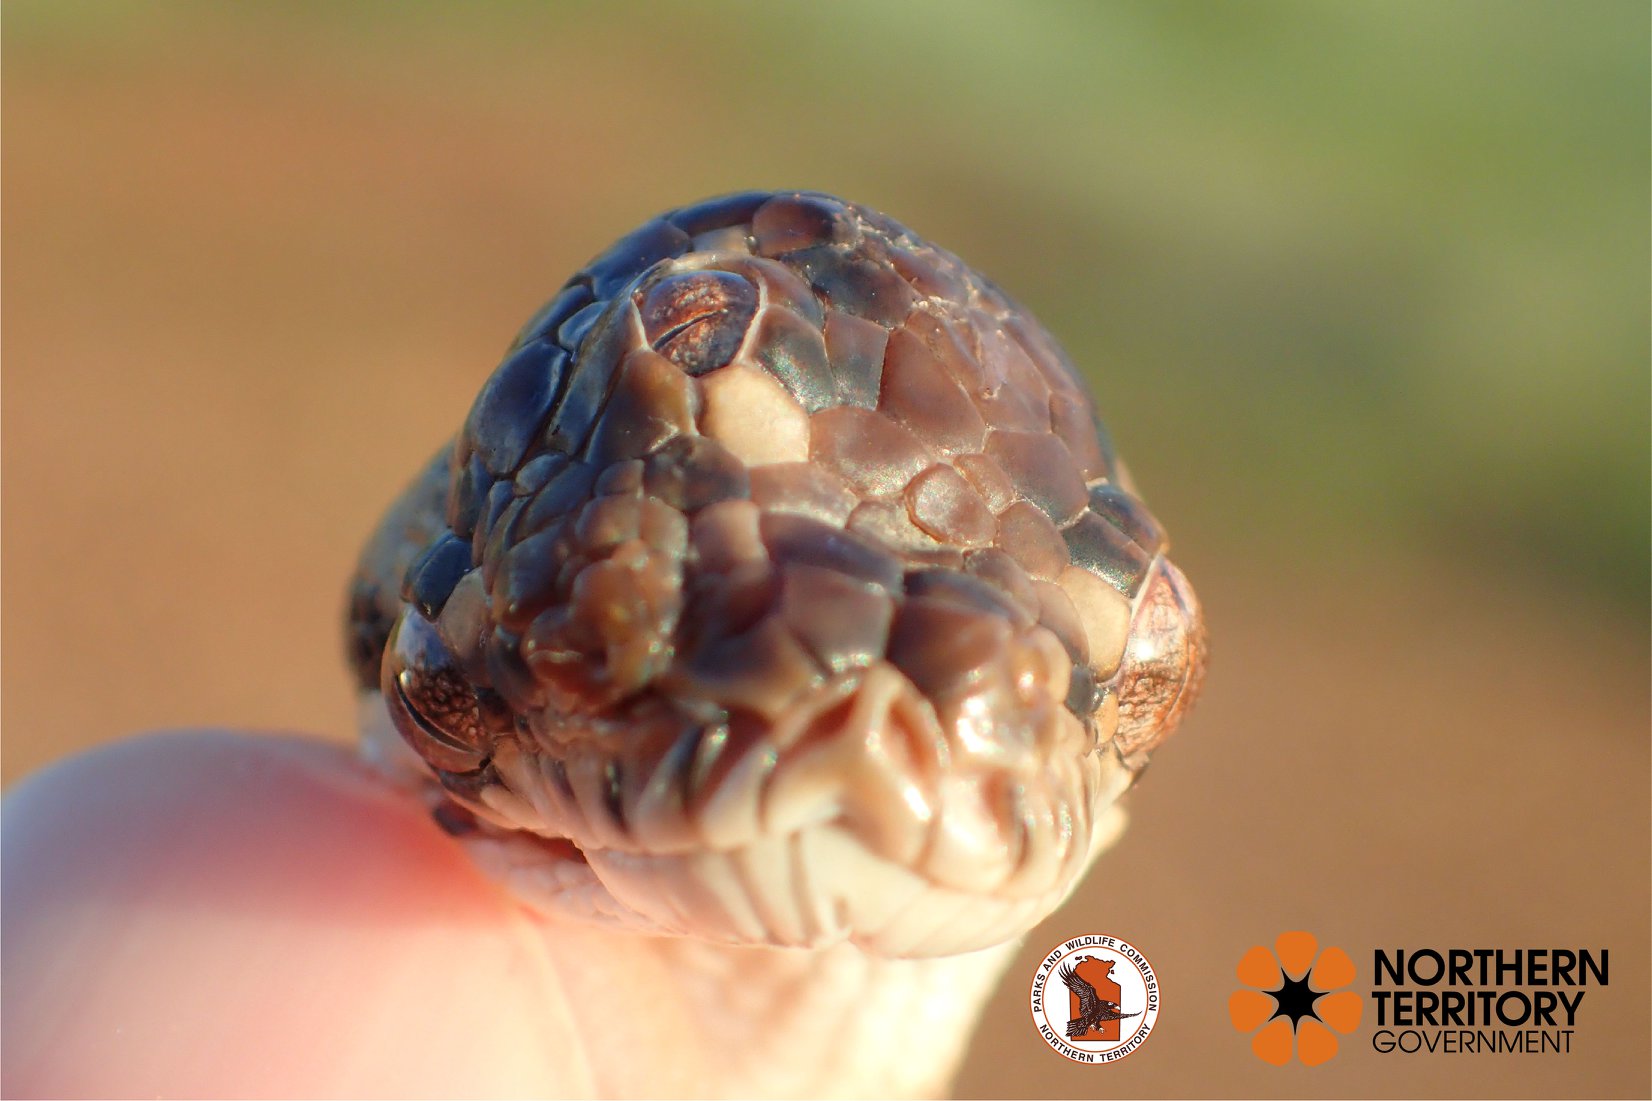 「第三の目を持つヘビ」が世界で初めてオーストラリアで発見されるの画像 3/3